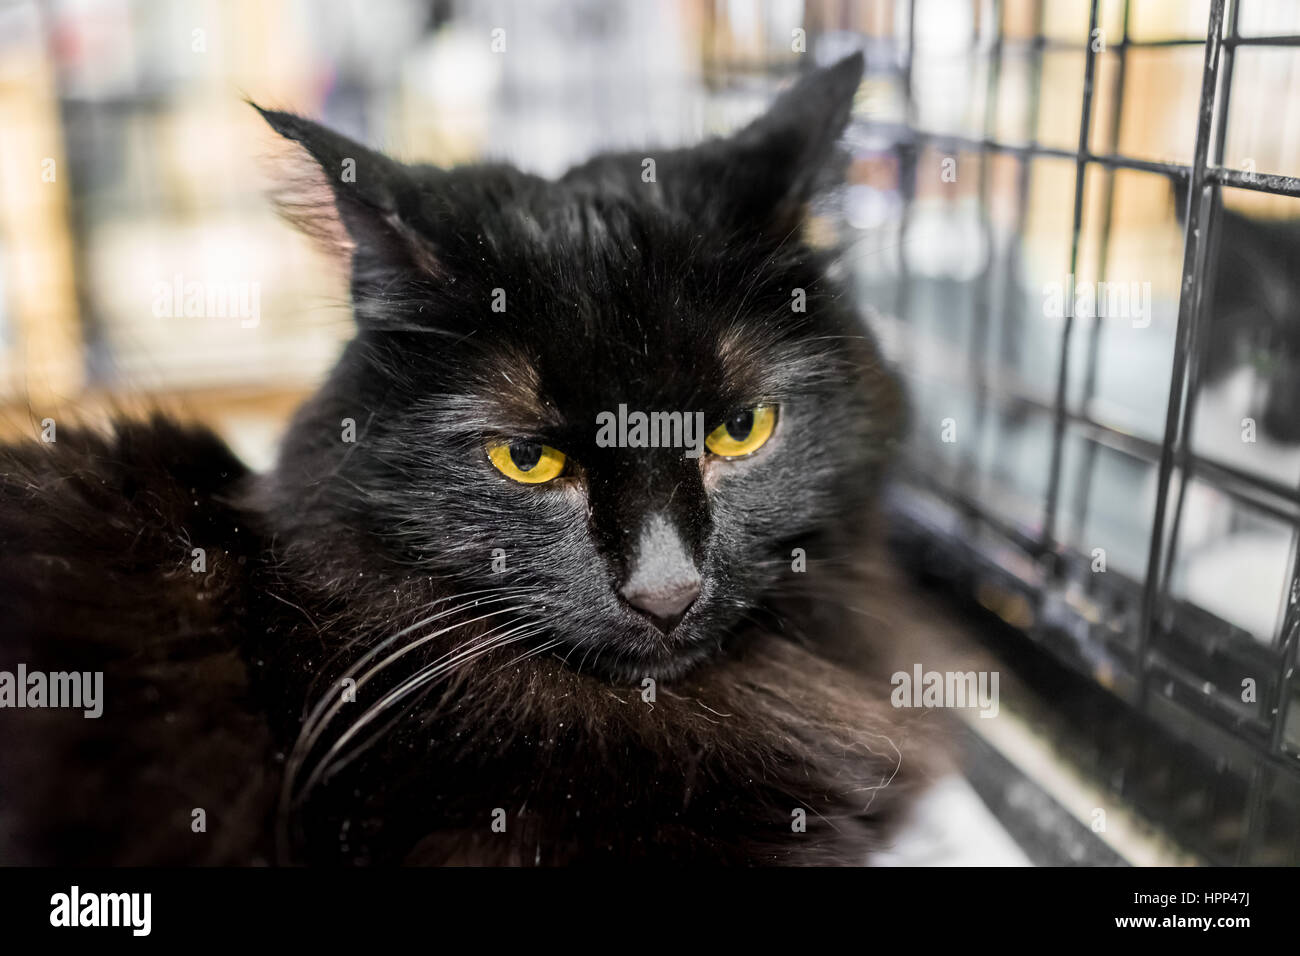 Gros plan du chat noir avec des cheveux longs et des yeux jaunes dans la cage Banque D'Images